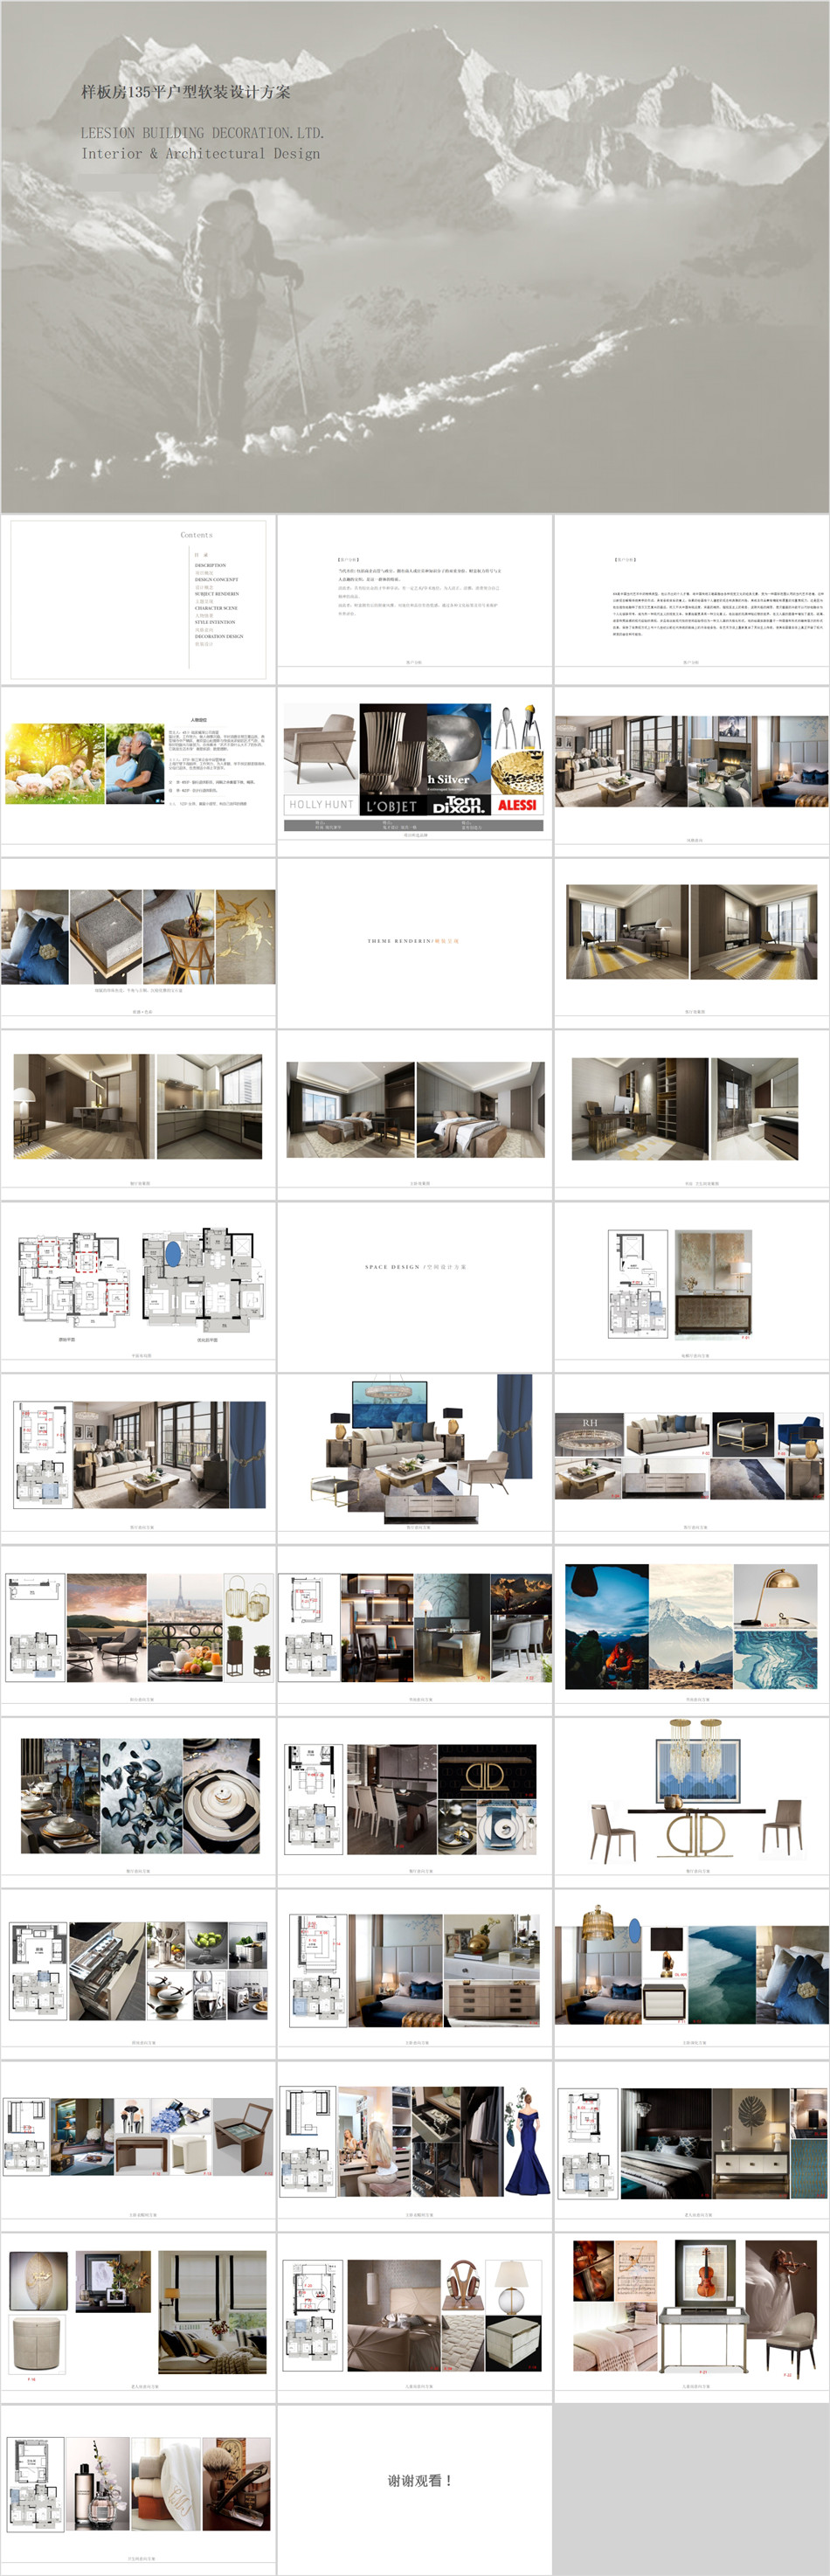 现代轻奢室内家装样板房软装概念设计方案PPT文本可编辑模板素材 第4张